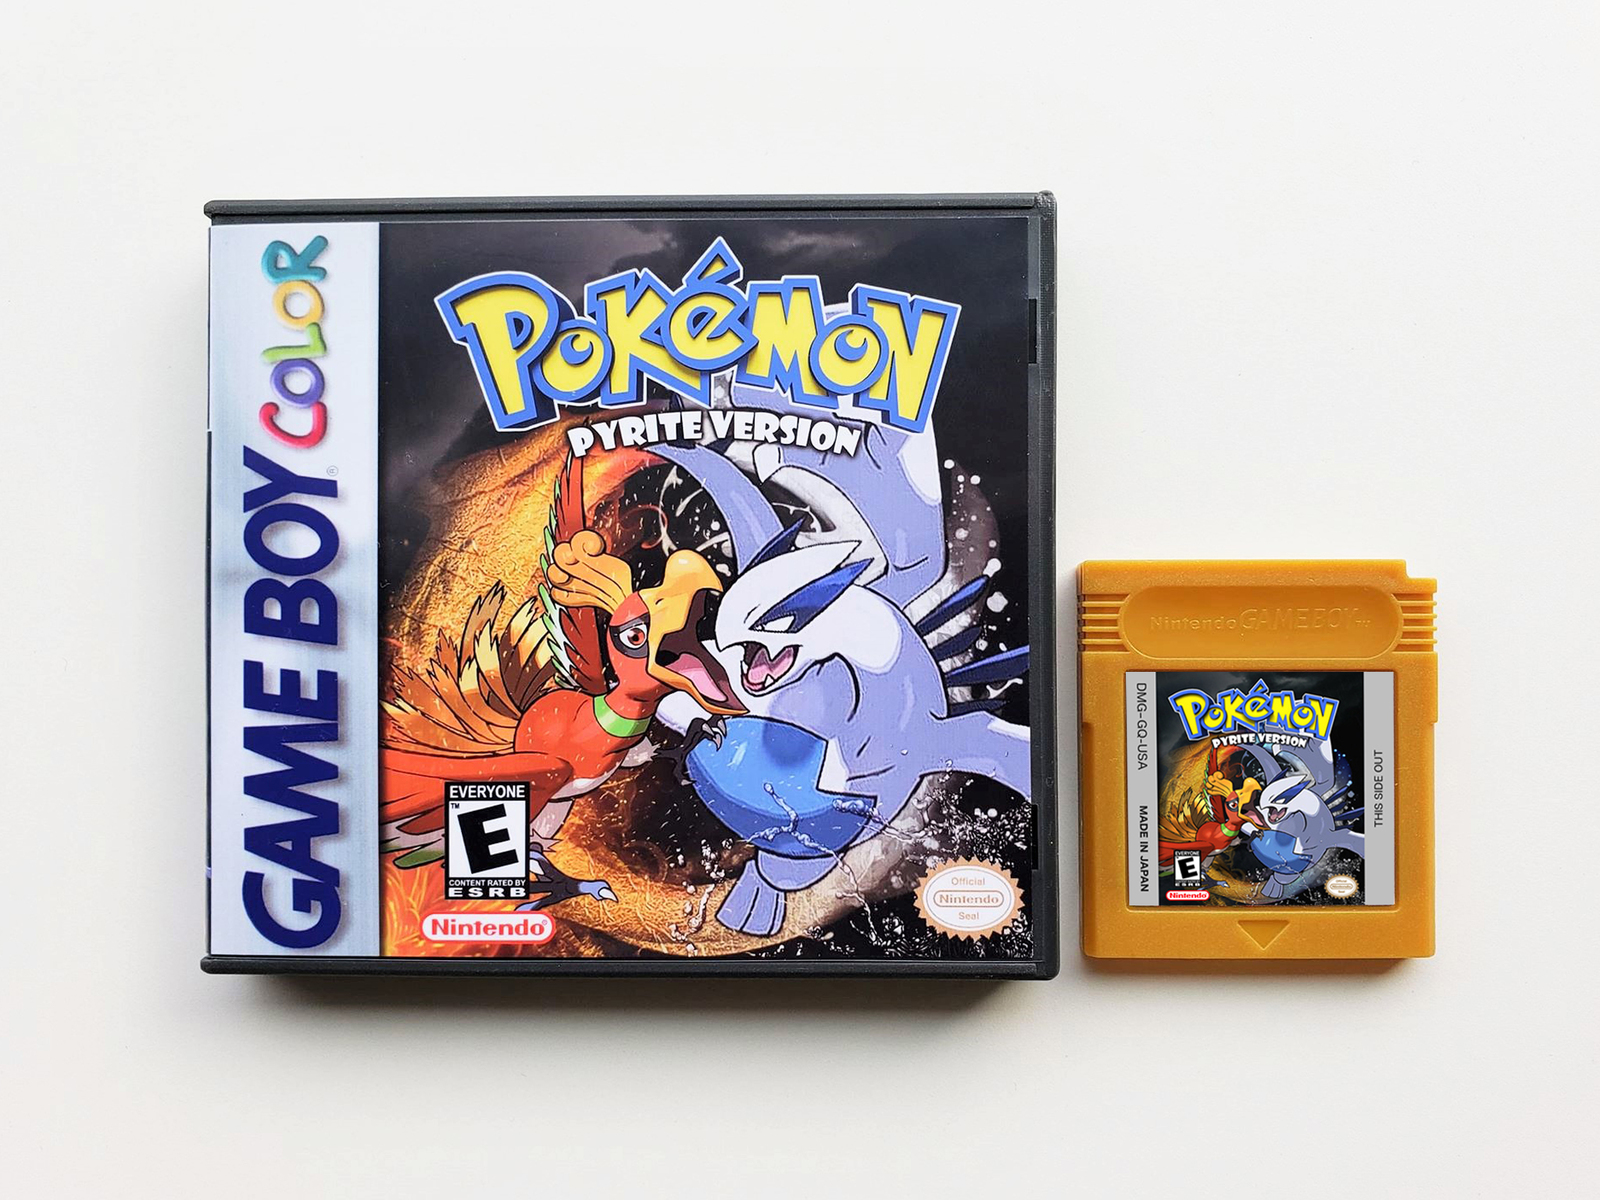 Pokemon Pyrite Game / Case - Gameboy Color (GBC) - USA Seller